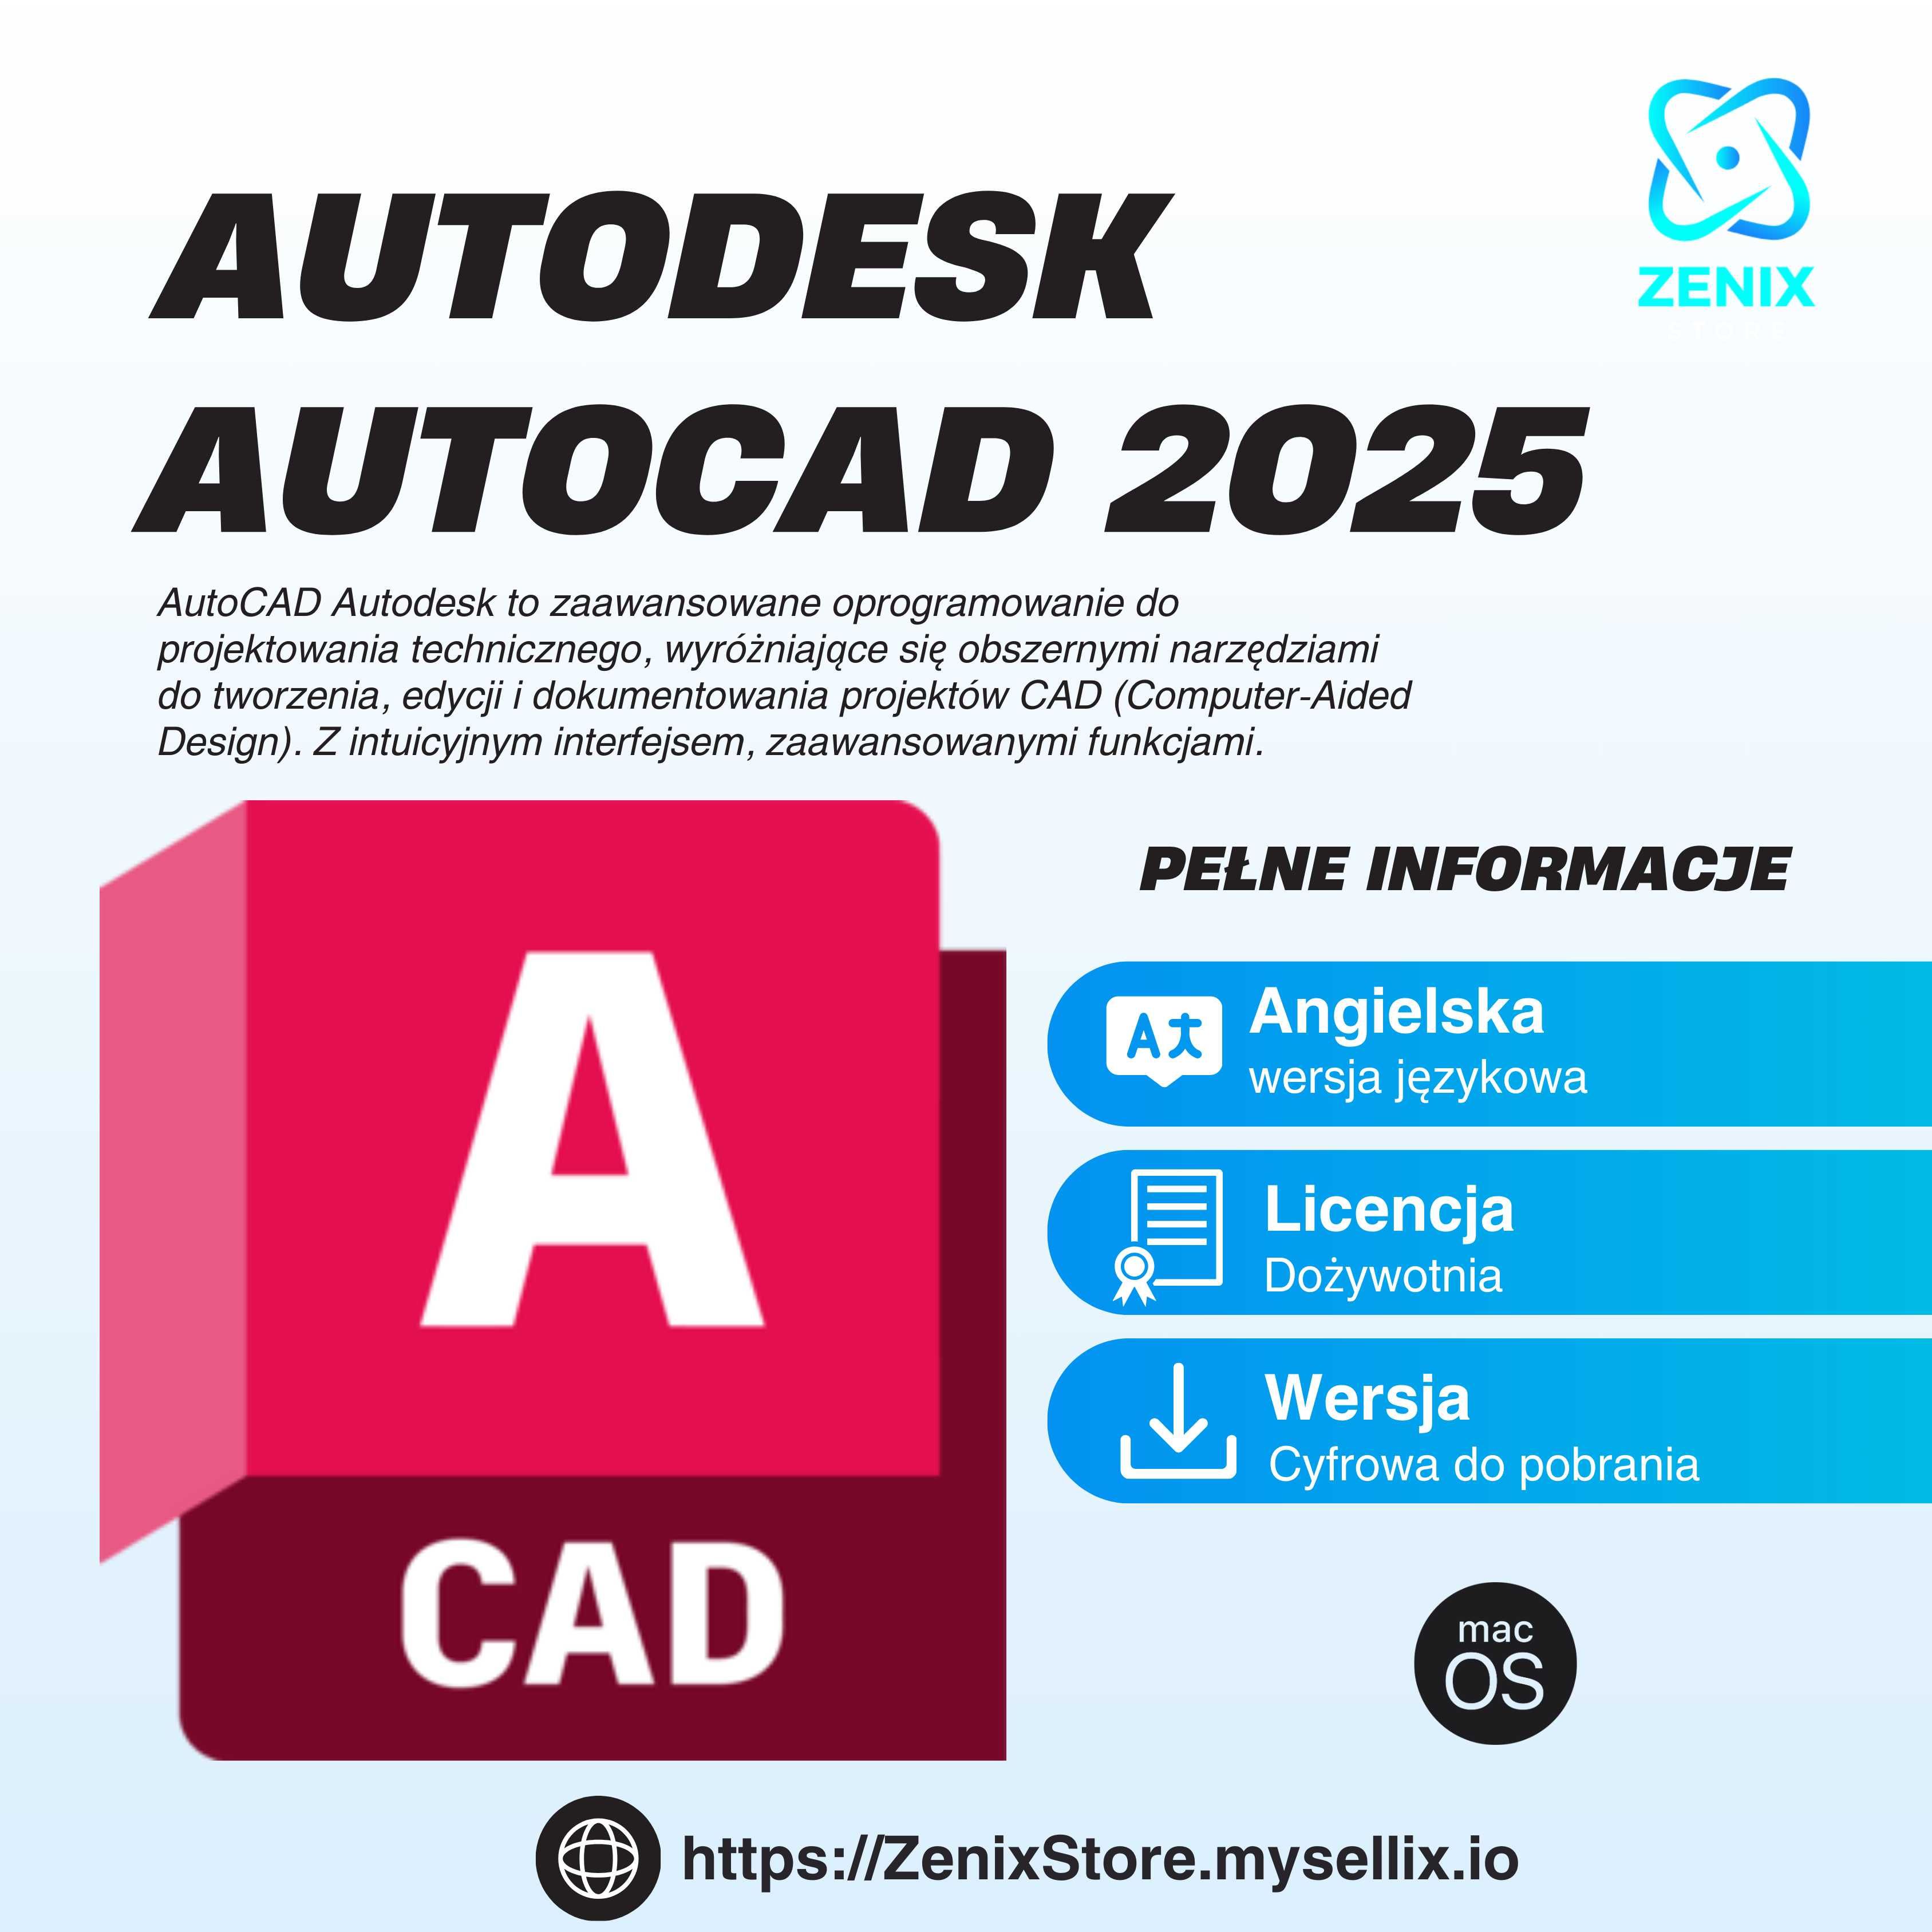 Autodesk AutoCAD [ 2025 ] * Licencja Dożywotnia Sieciowa * MacOS